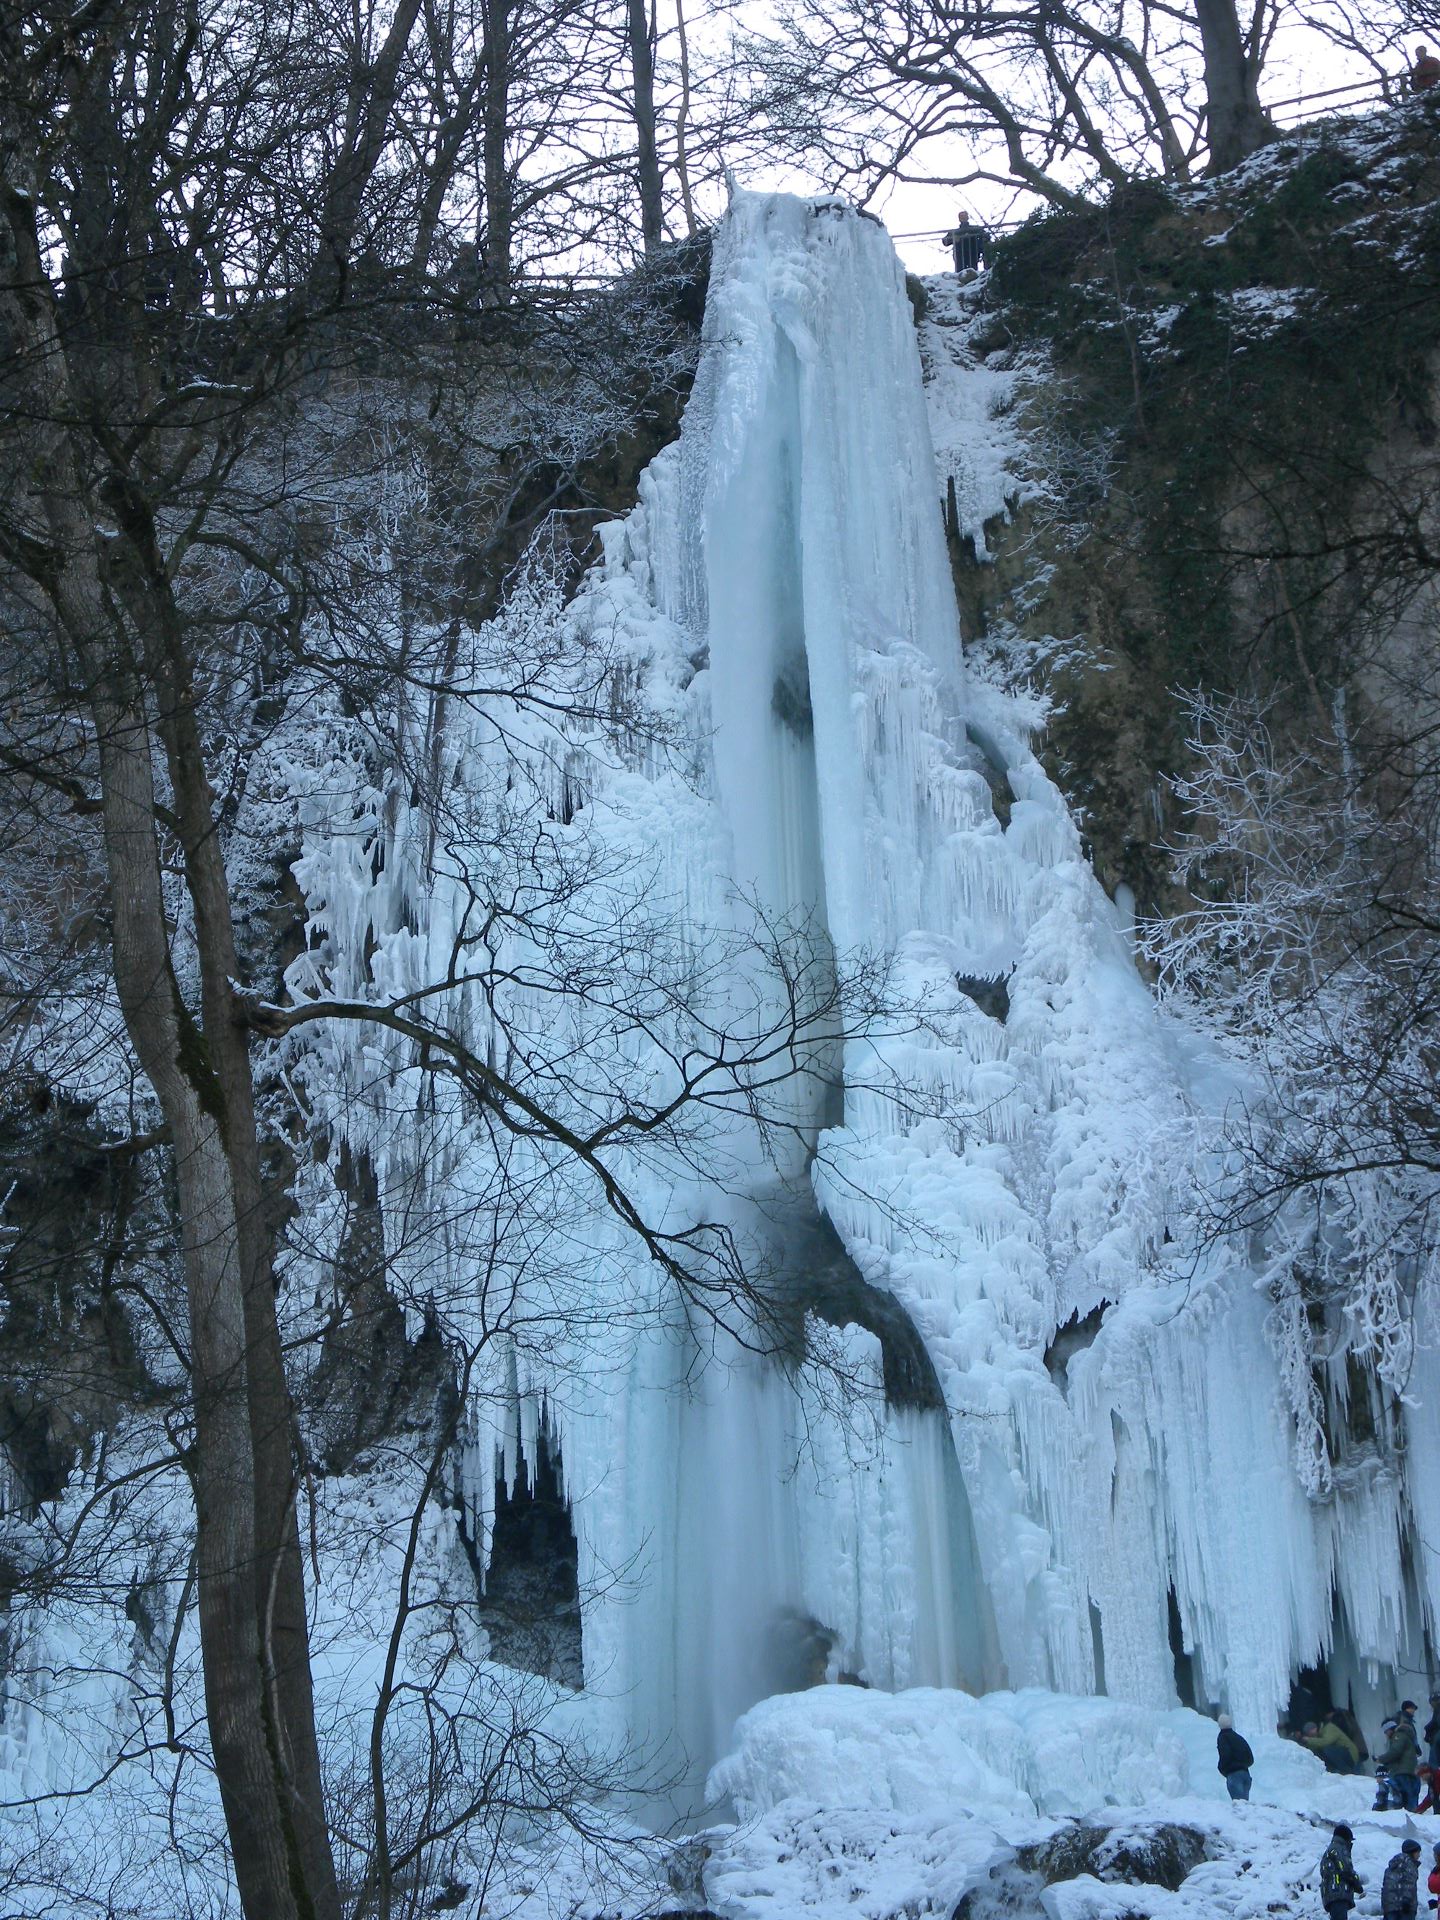 Bad Uracher Eis-Wasserfall 2012